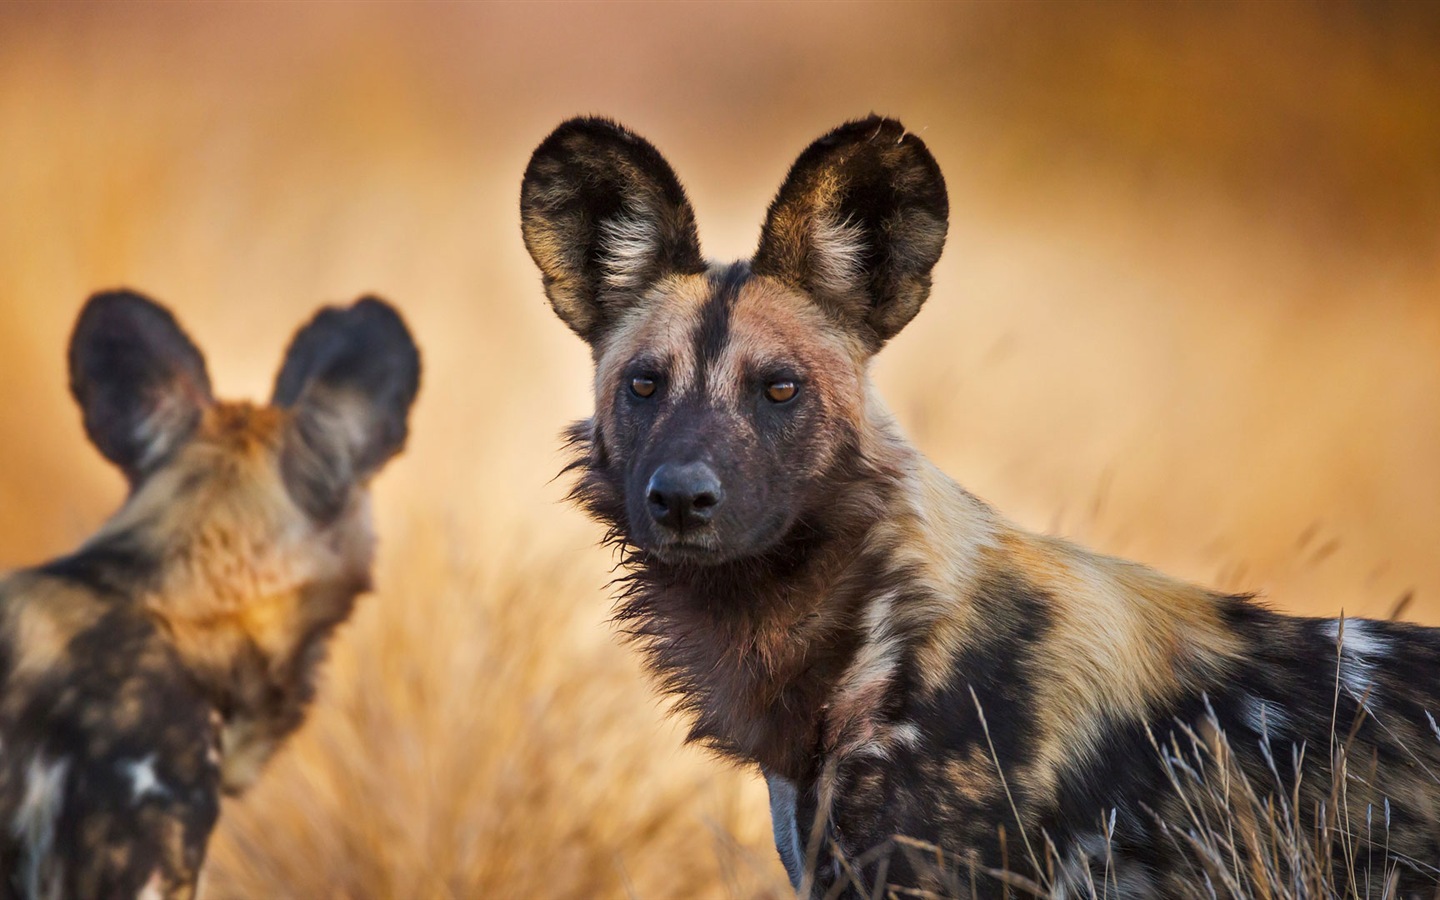 Морды у гиеновых собак вполне собачьи, только уши полукруглые